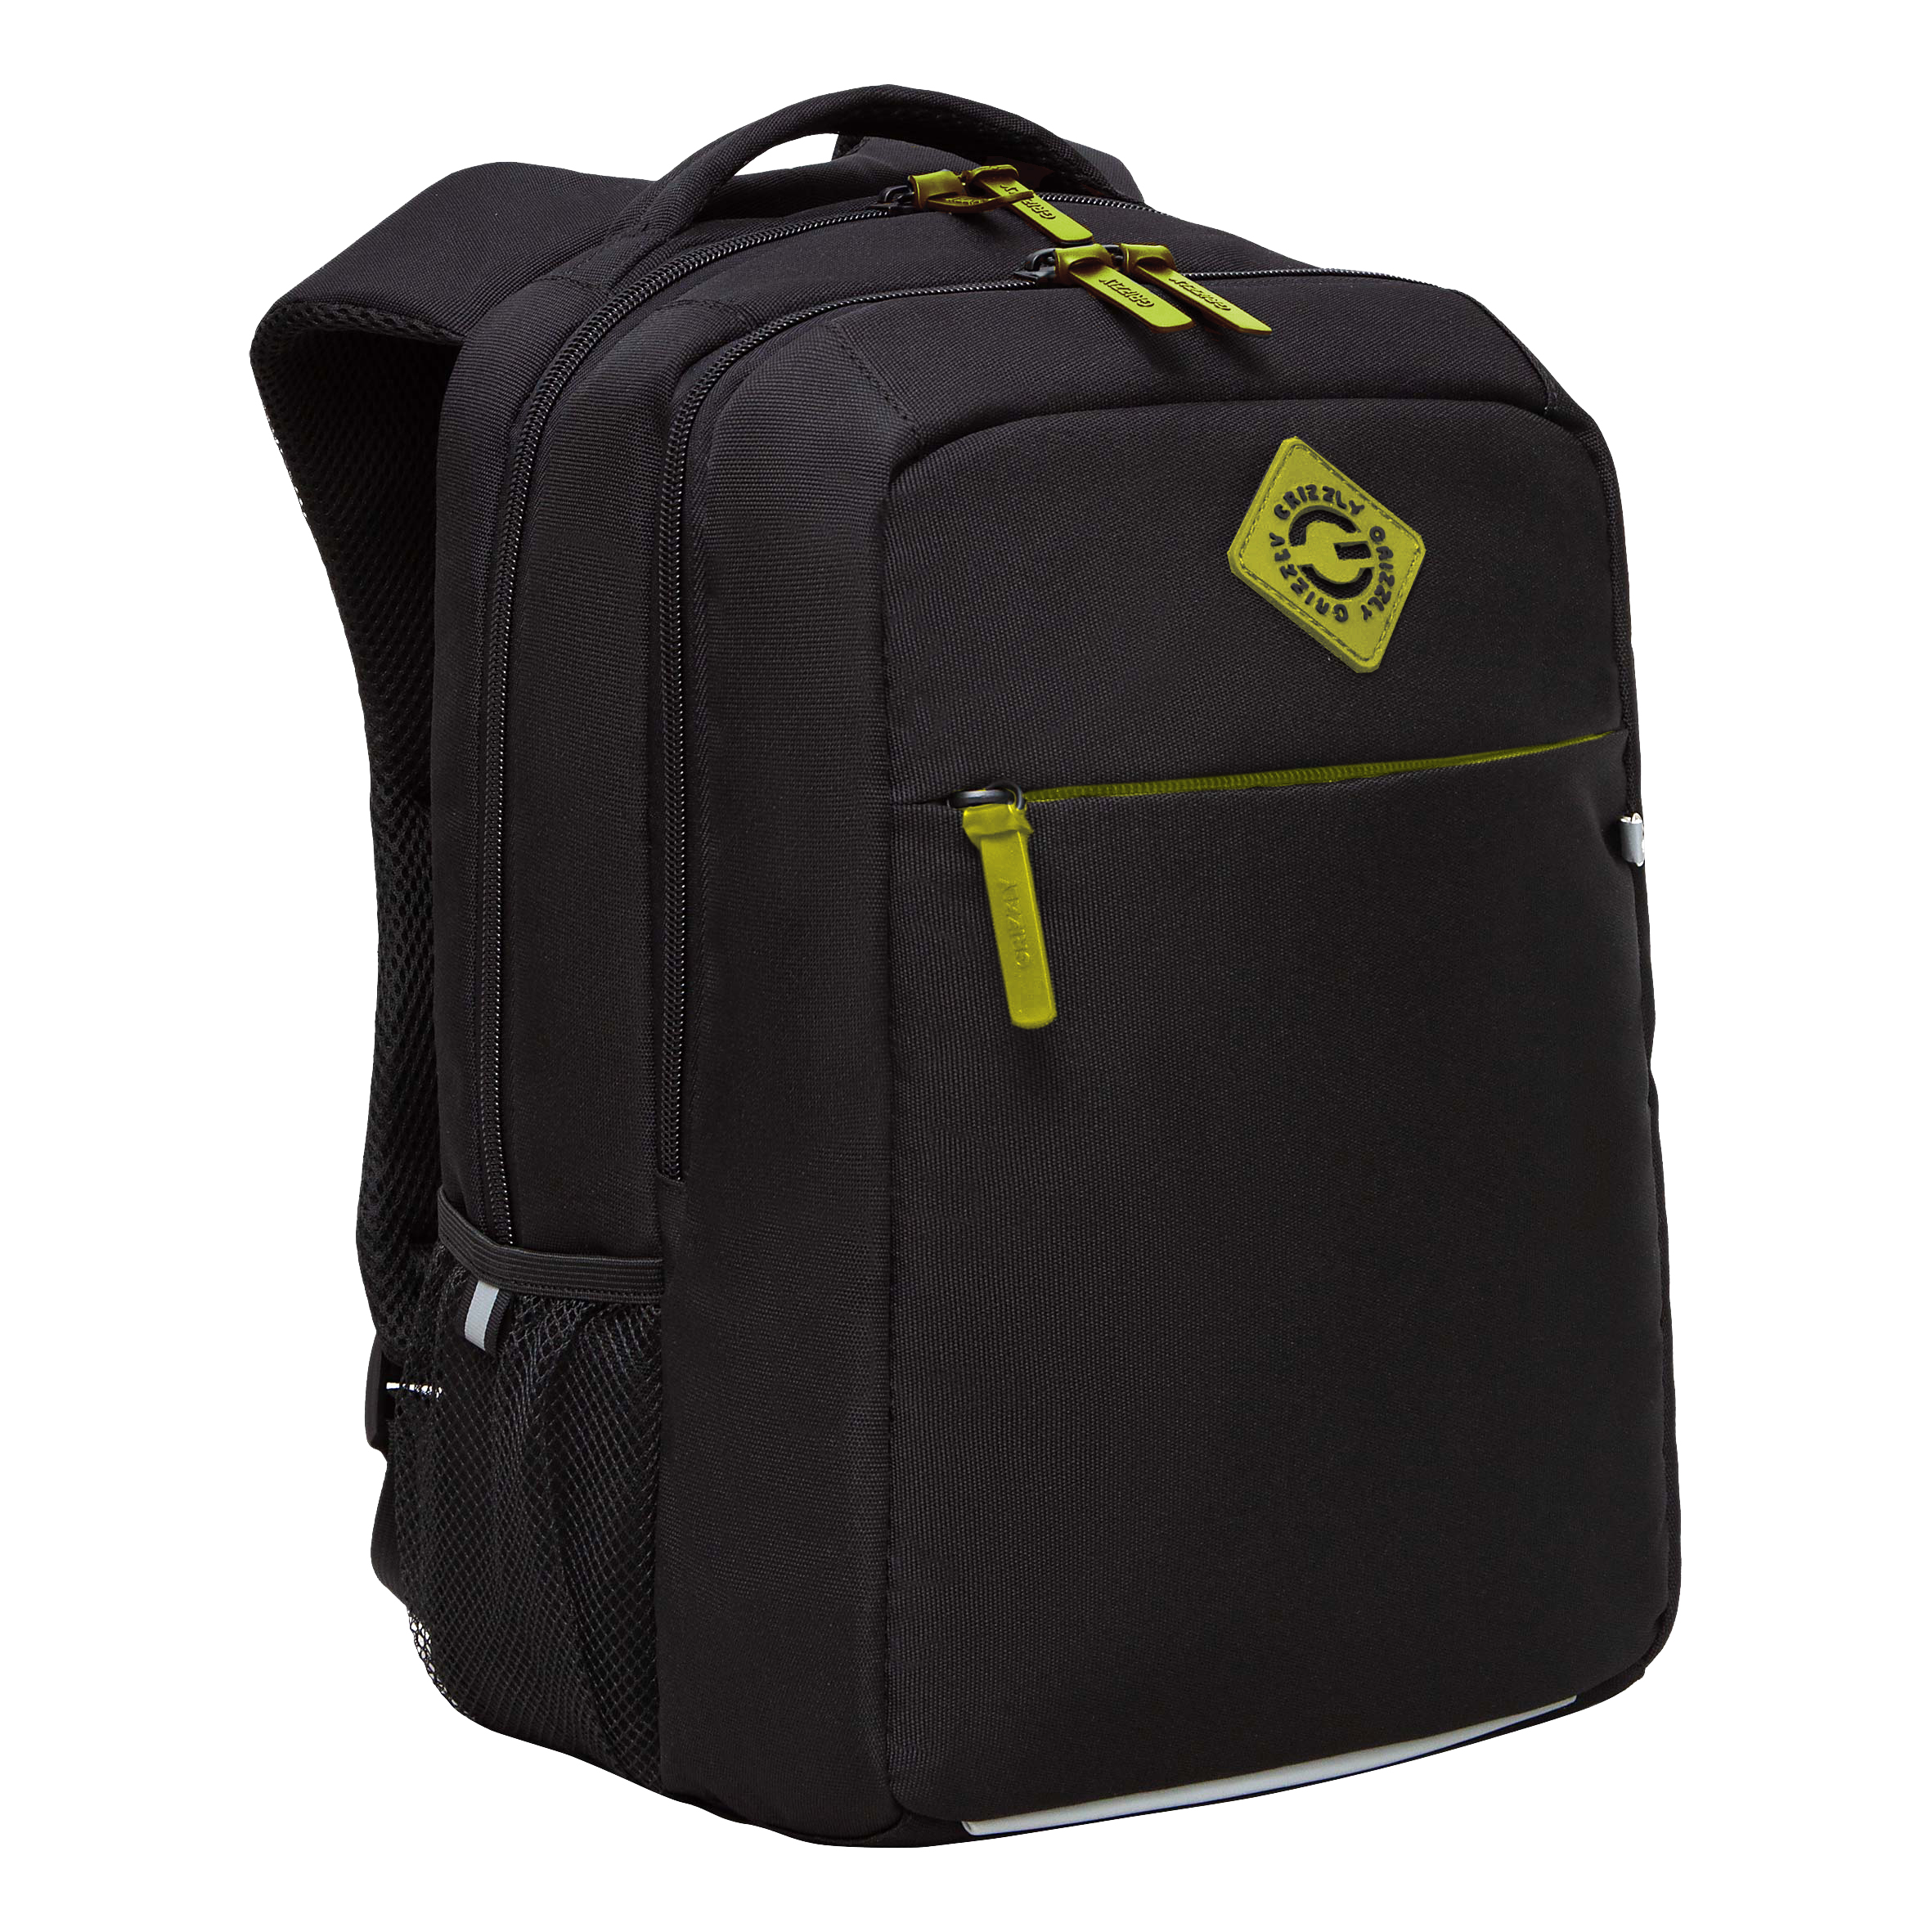 Рюкзак GRIZZLY с карманом для ноутбука 13, анатомический, для мальчика RB-456-12 рюкзак для ноутбука 13 3 sumdex pon 266gy